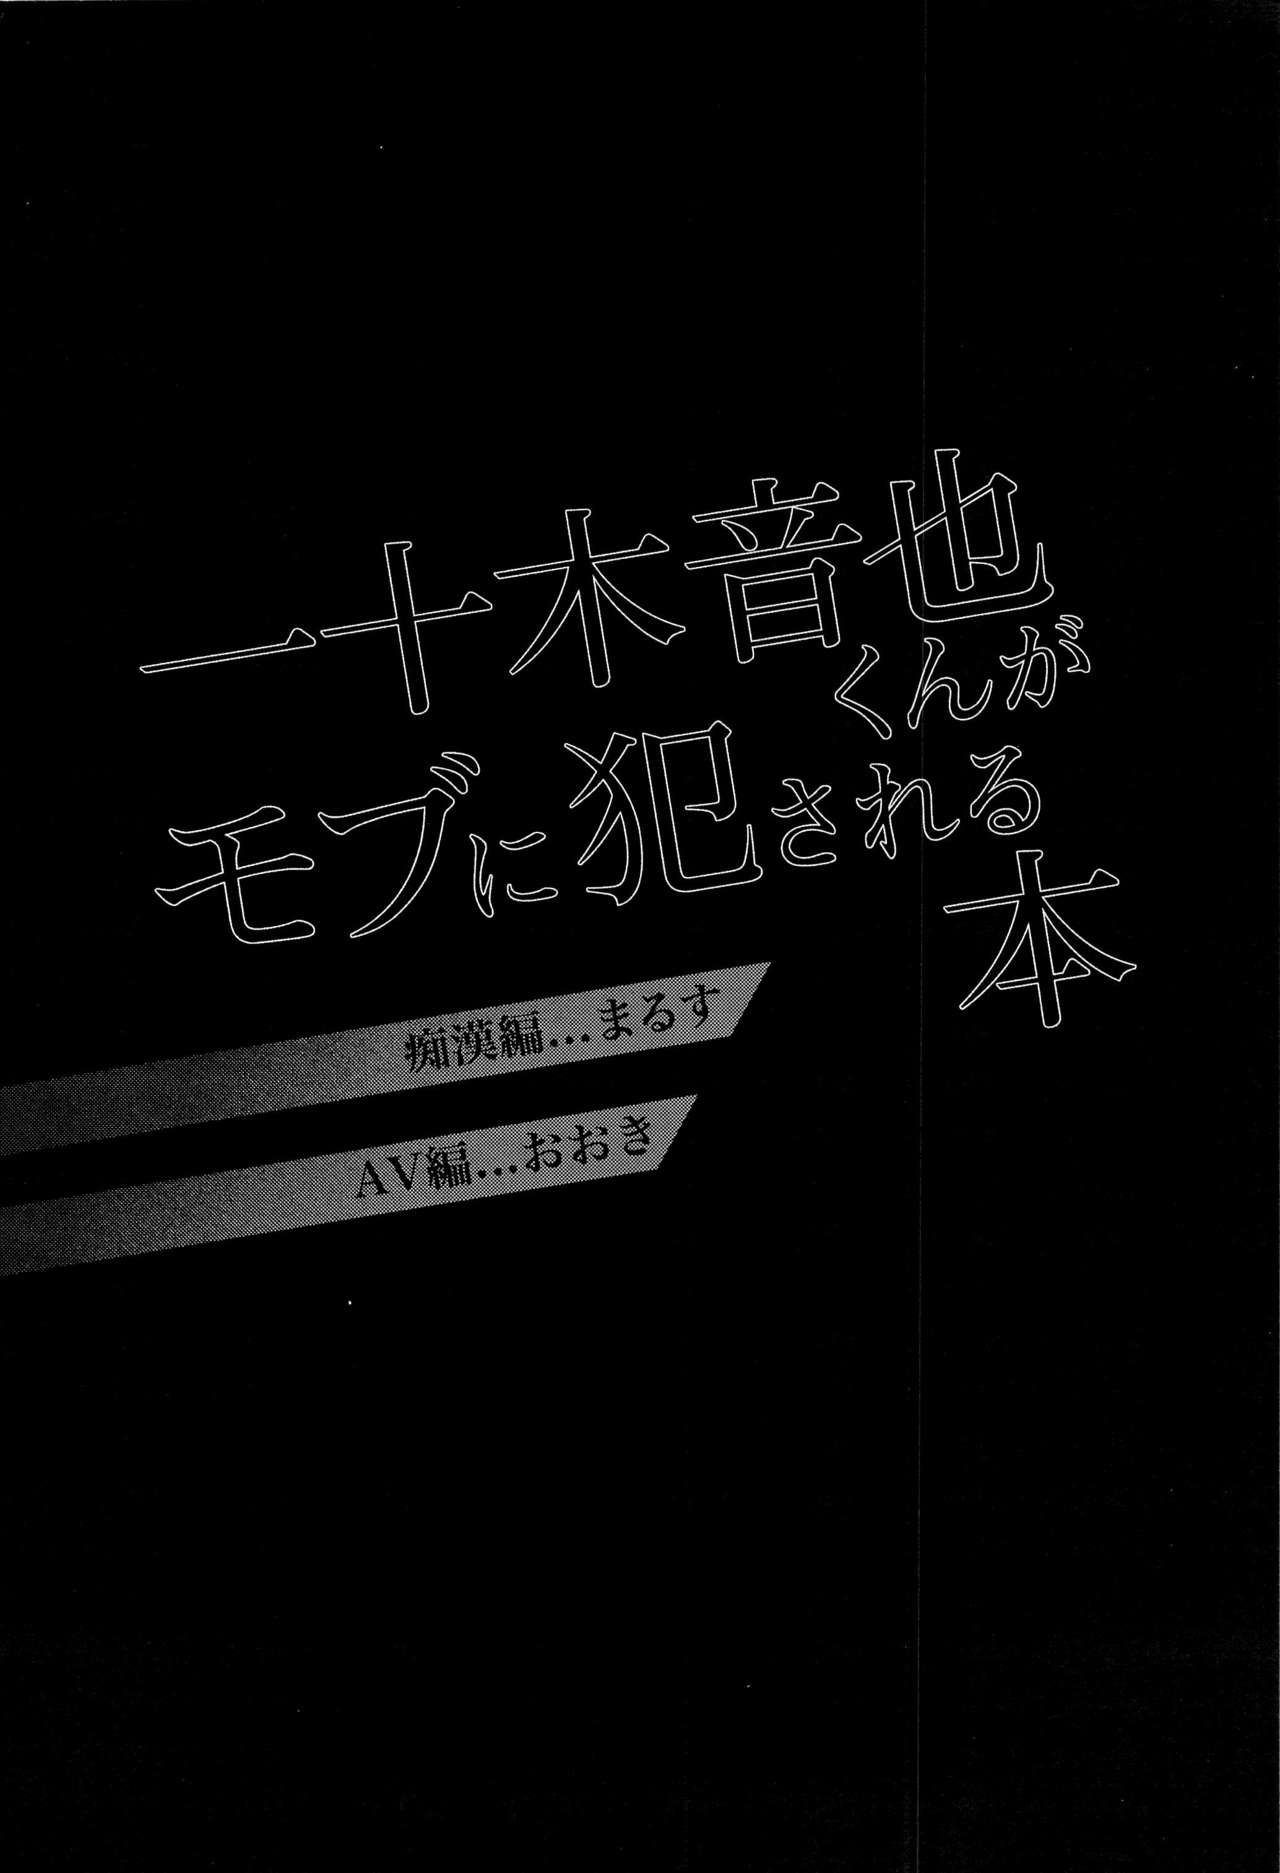 (サンクリ63) [SAKEPAPA、tamakoro (おおきいき、まるす)] 一十木音也くんがモブに犯される本 (うたの☆プリンスさまっ♪) [中国翻訳]